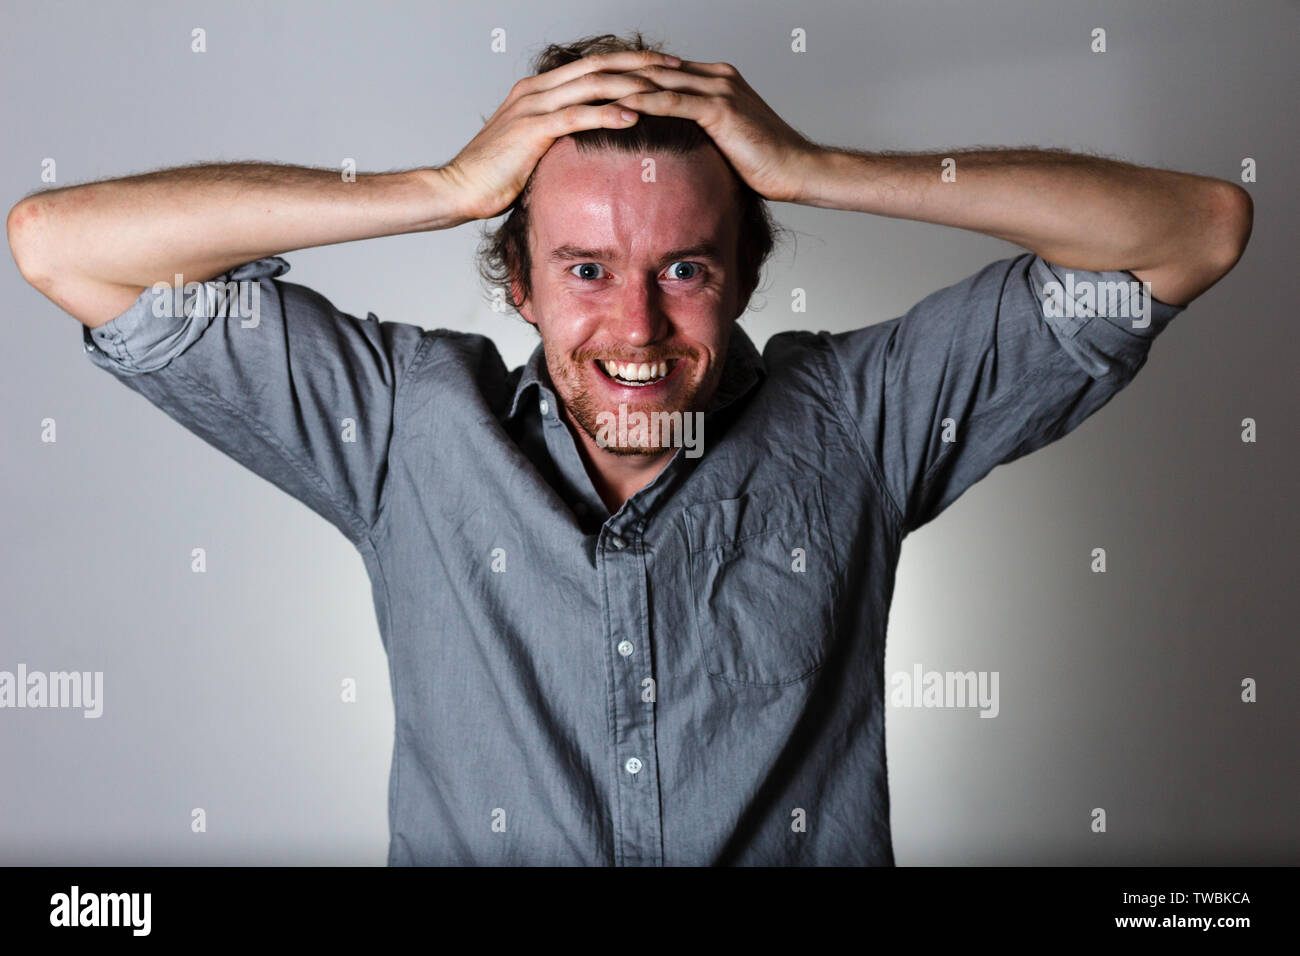 Scary crazy espressione del giovane uomo su sfondo grigio Foto Stock